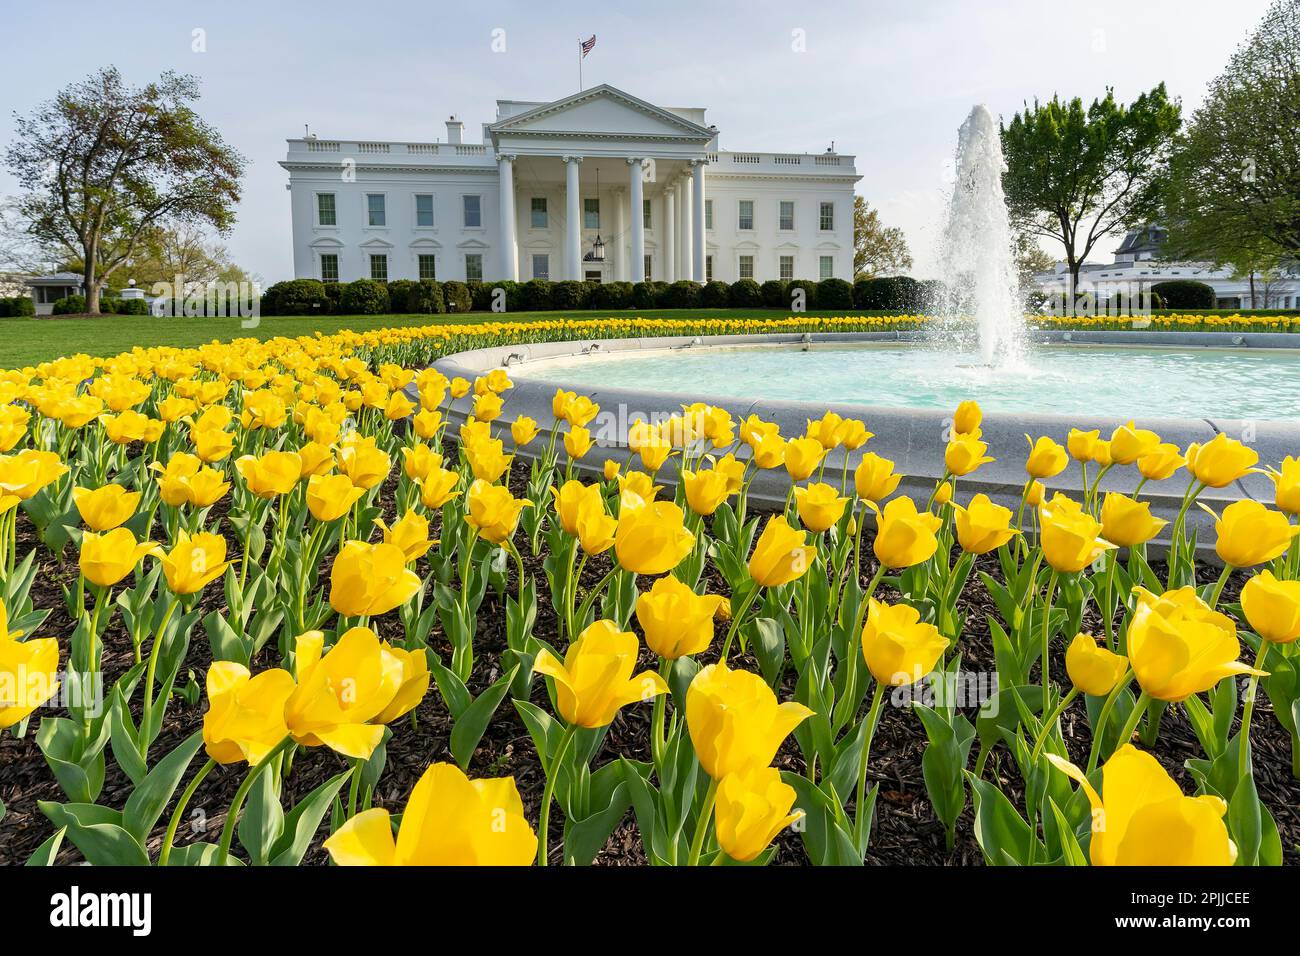 Gelbe Tulpen blühen am Donnerstag, den 8. April 2021, auf dem North Lawn des Weißen Hauses. (Offizielles Foto des Weißen Hauses von Carlos Fyfe) Stockfoto